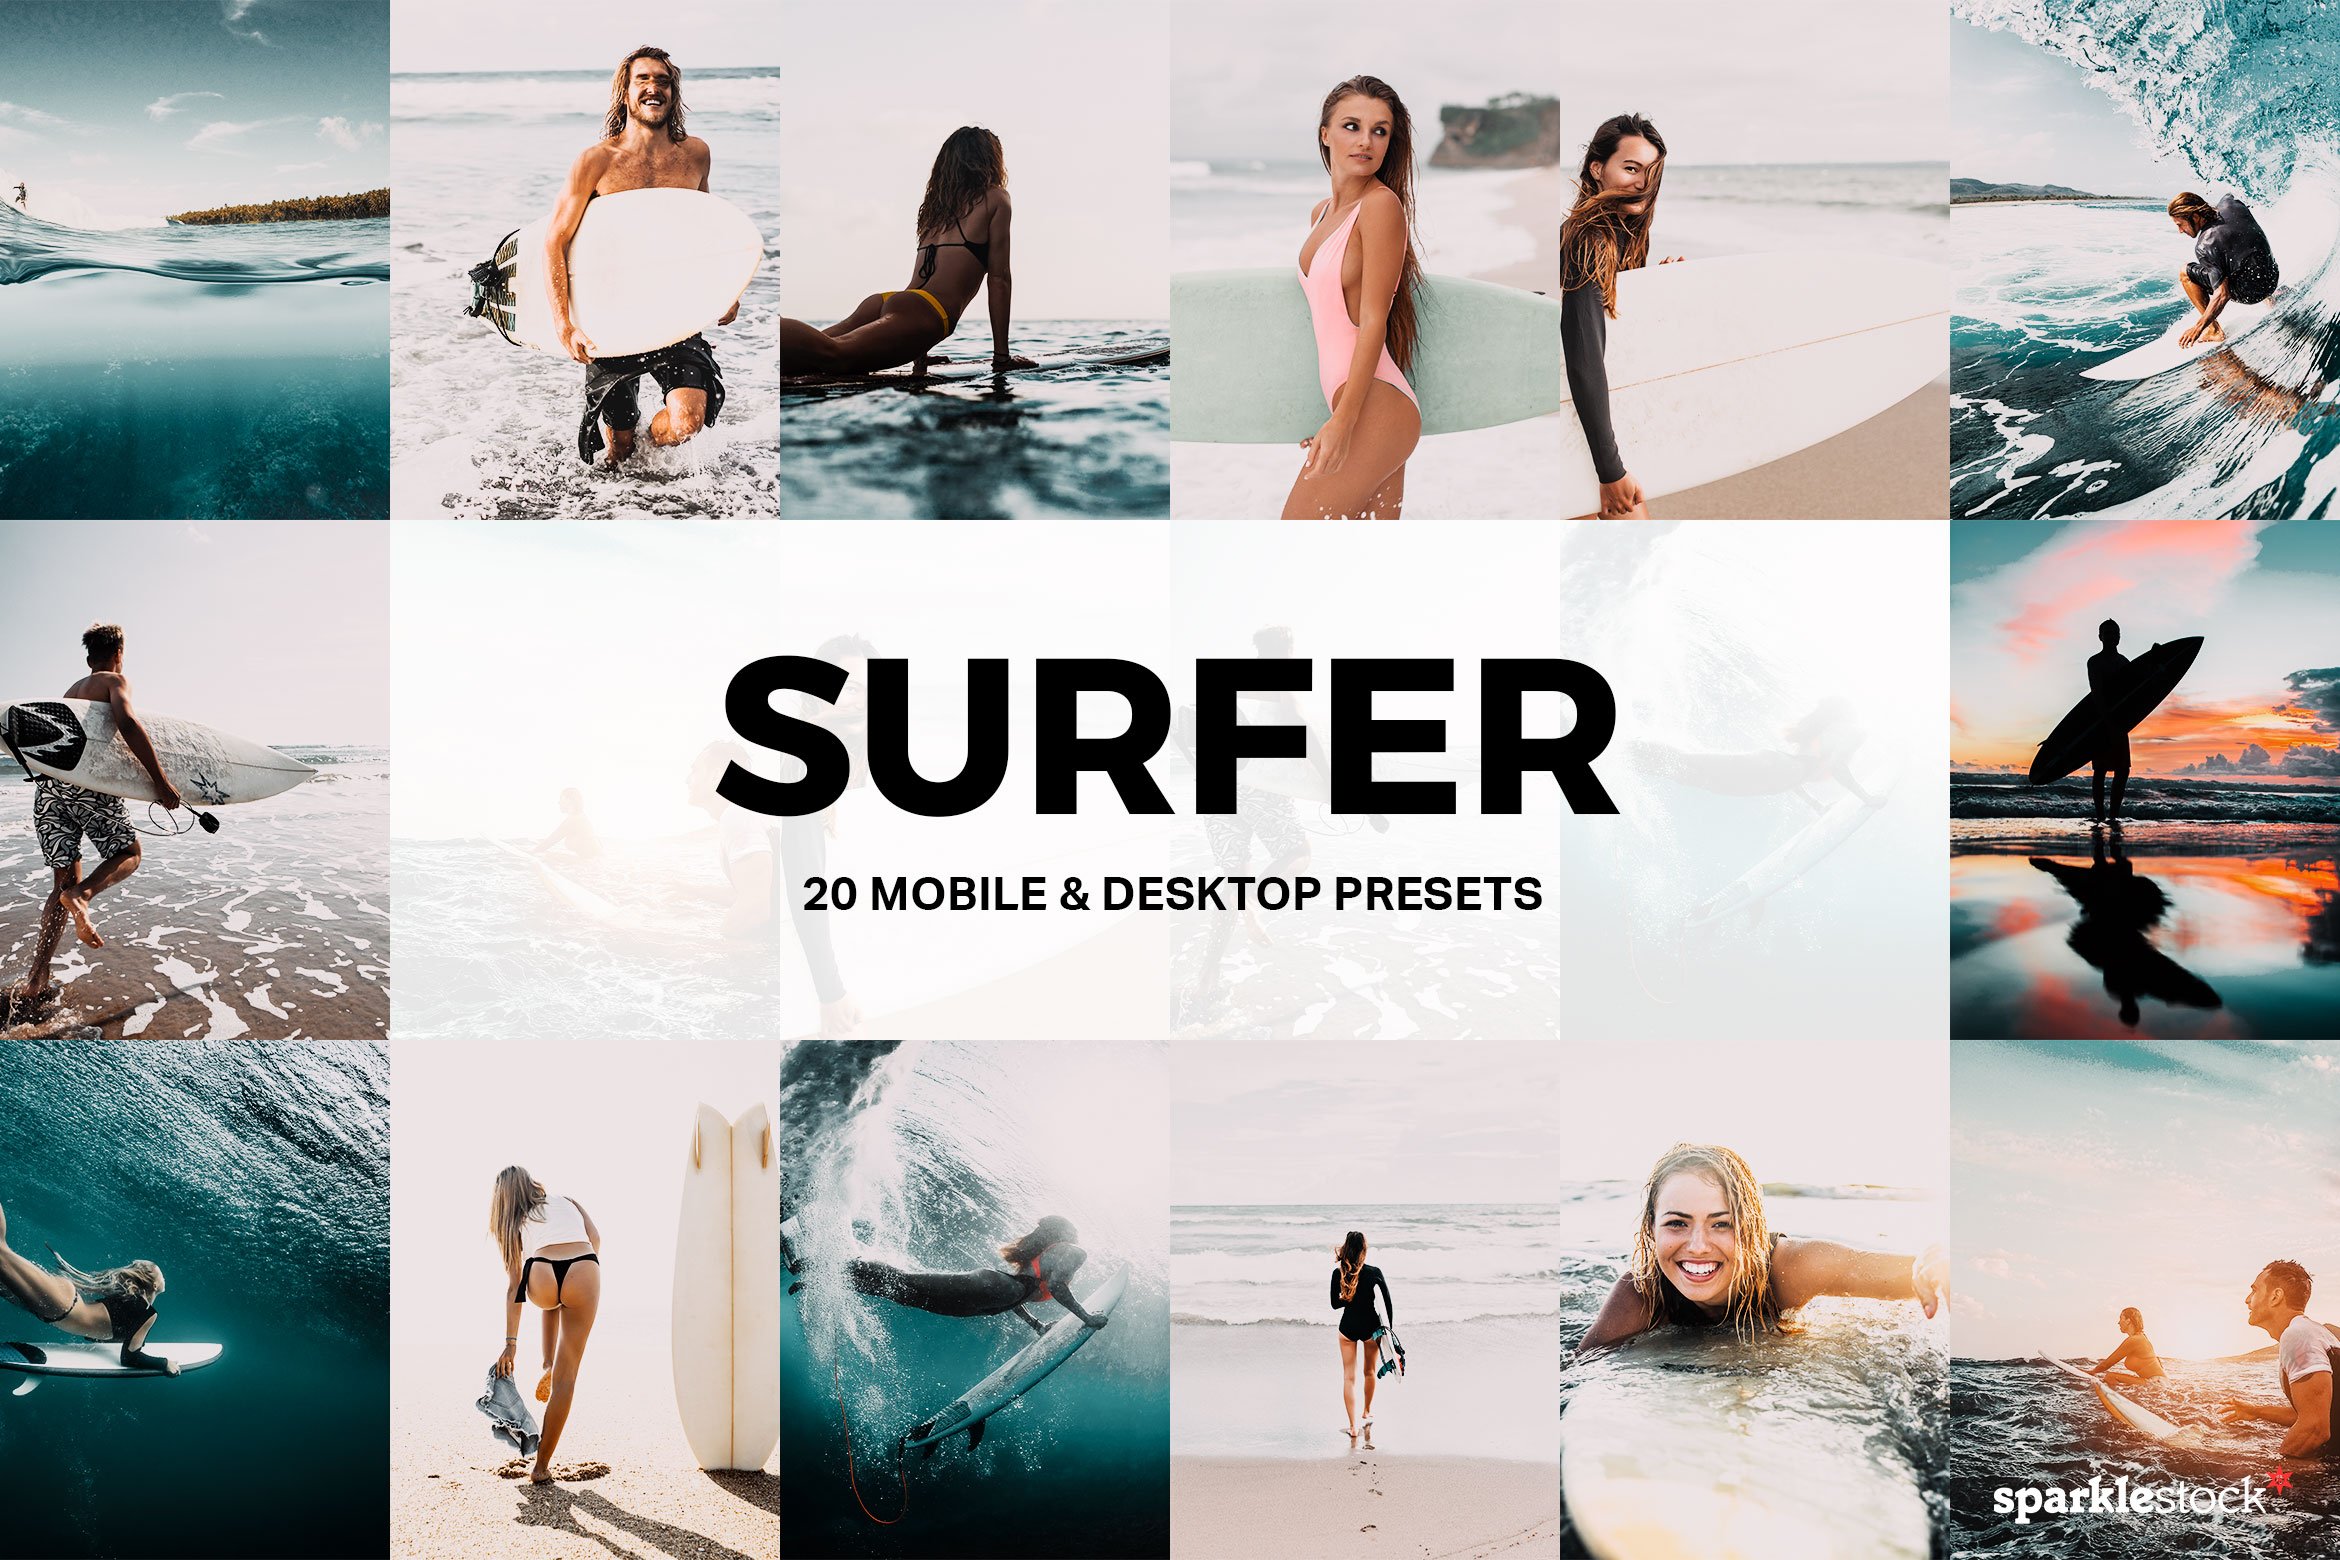 20 Surfer Lightroom Presets and LUTscover image.